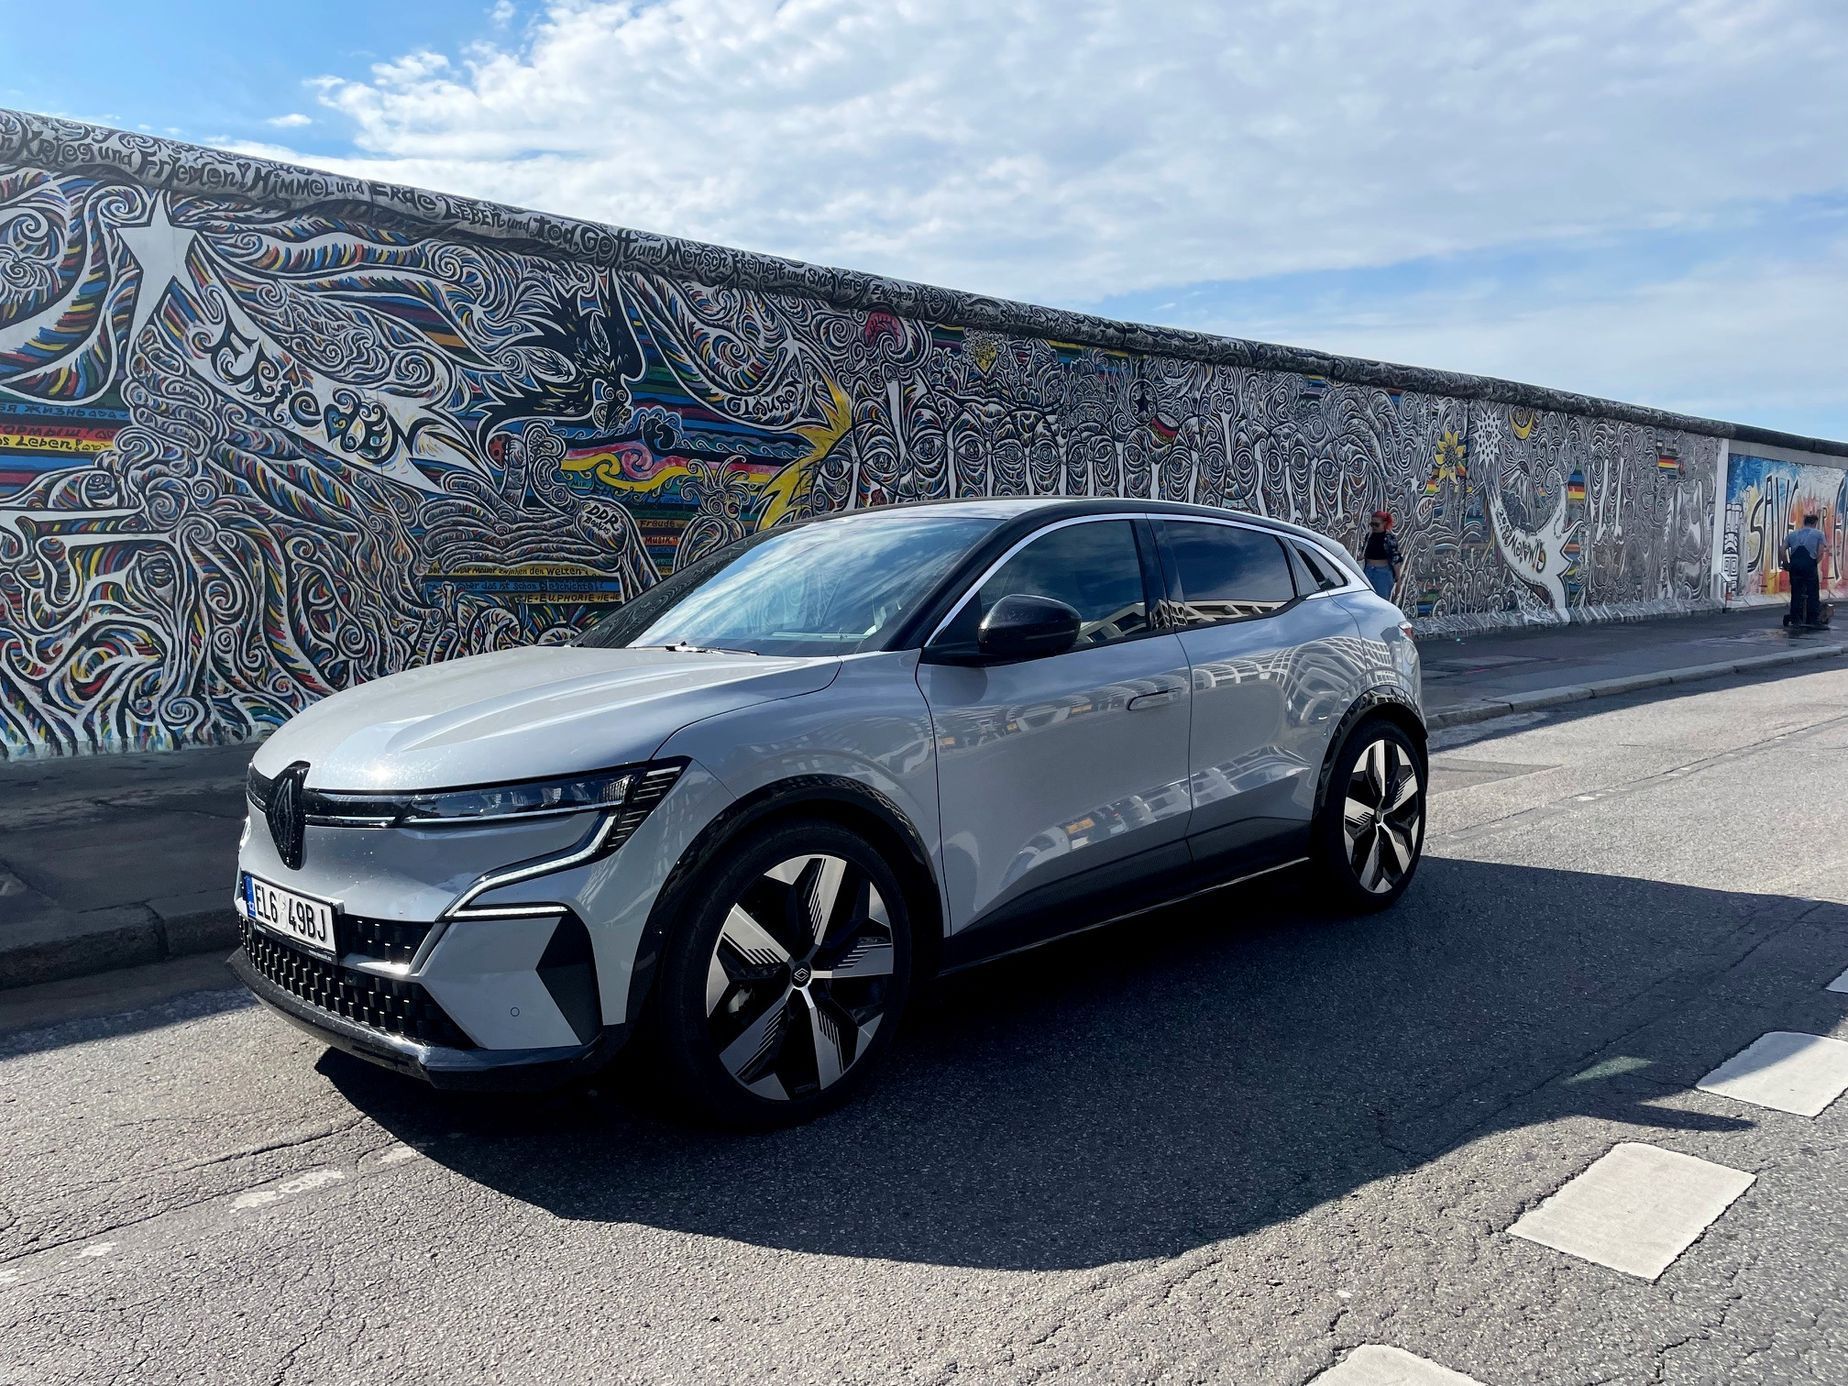 Renault Megane dlouhodobý test cestopis Německo